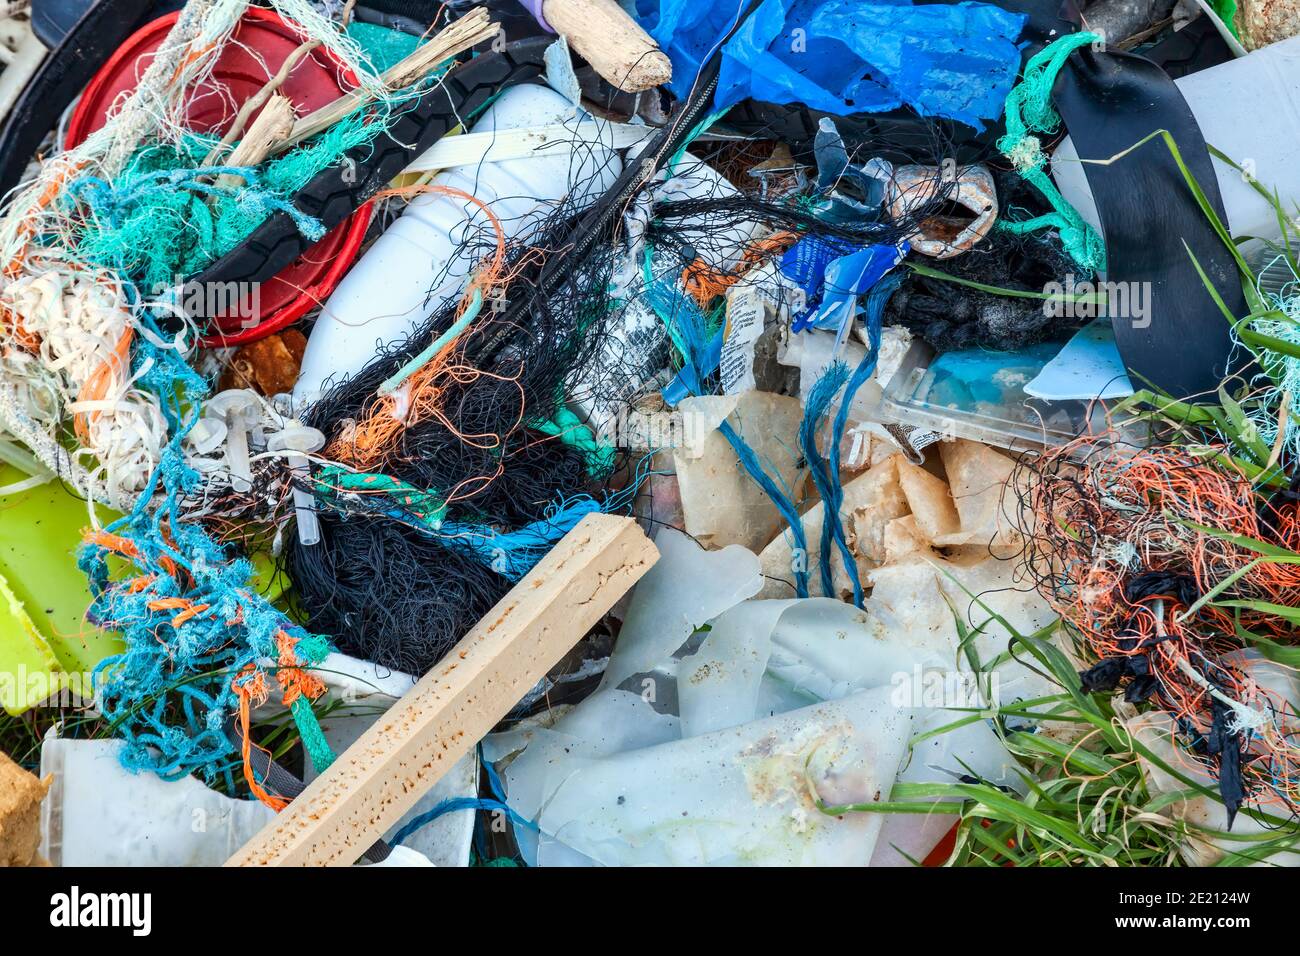 Rifiuti di plastica spazzatura con reti impigliate dell'industria della pesca su una spiaggia costiera di mare causando inquinamento marino rifiuti e danni ambientali, stock Foto Stock